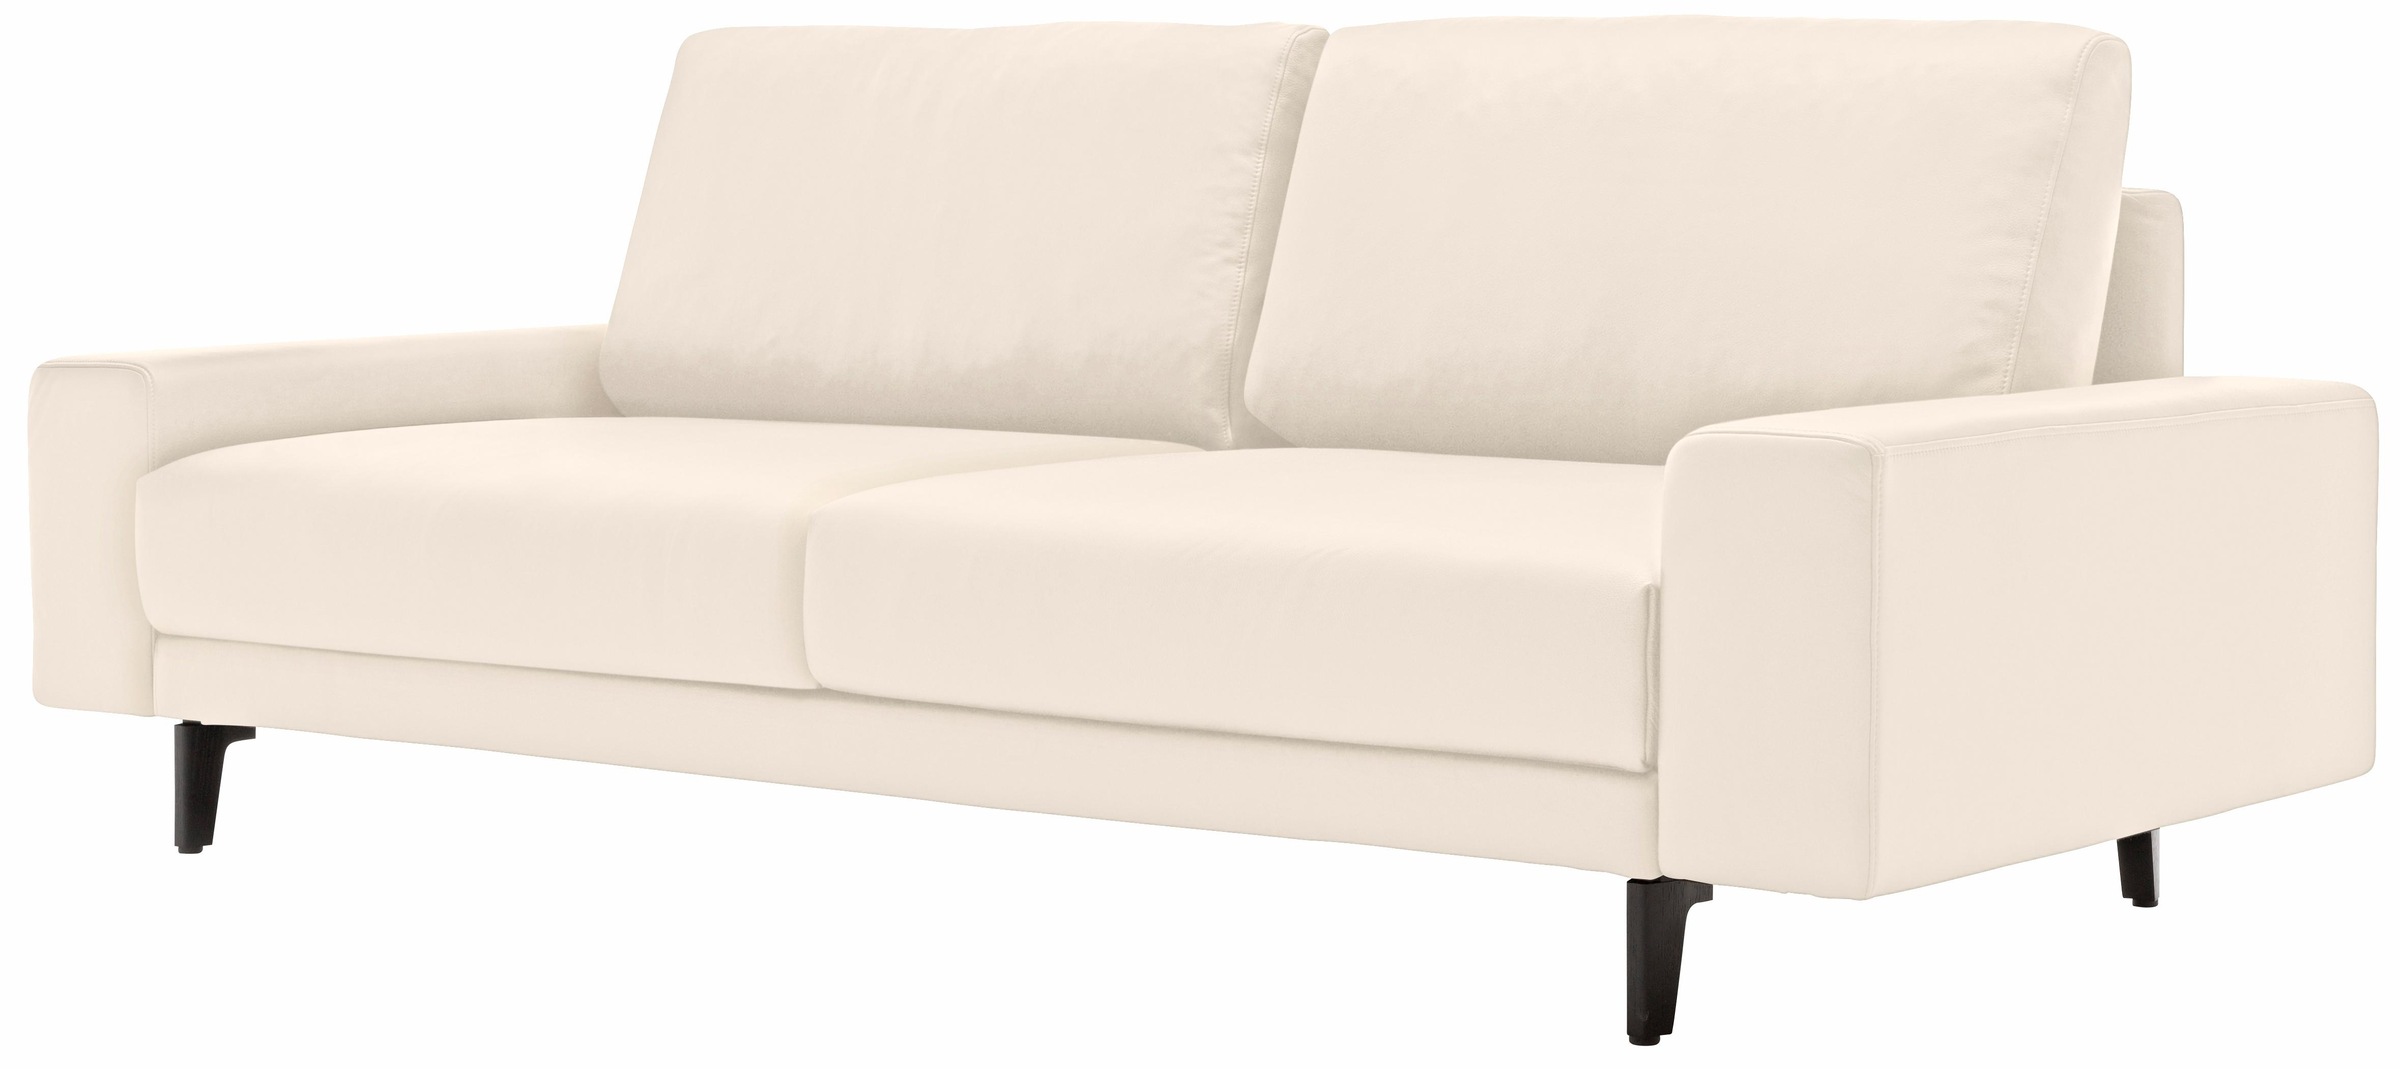 Alugussfüße sofa 2-Sitzer 180 BAUR cm niedrig, kaufen in Breite umbragrau, Armlehne breit »hs.450«, hülsta |